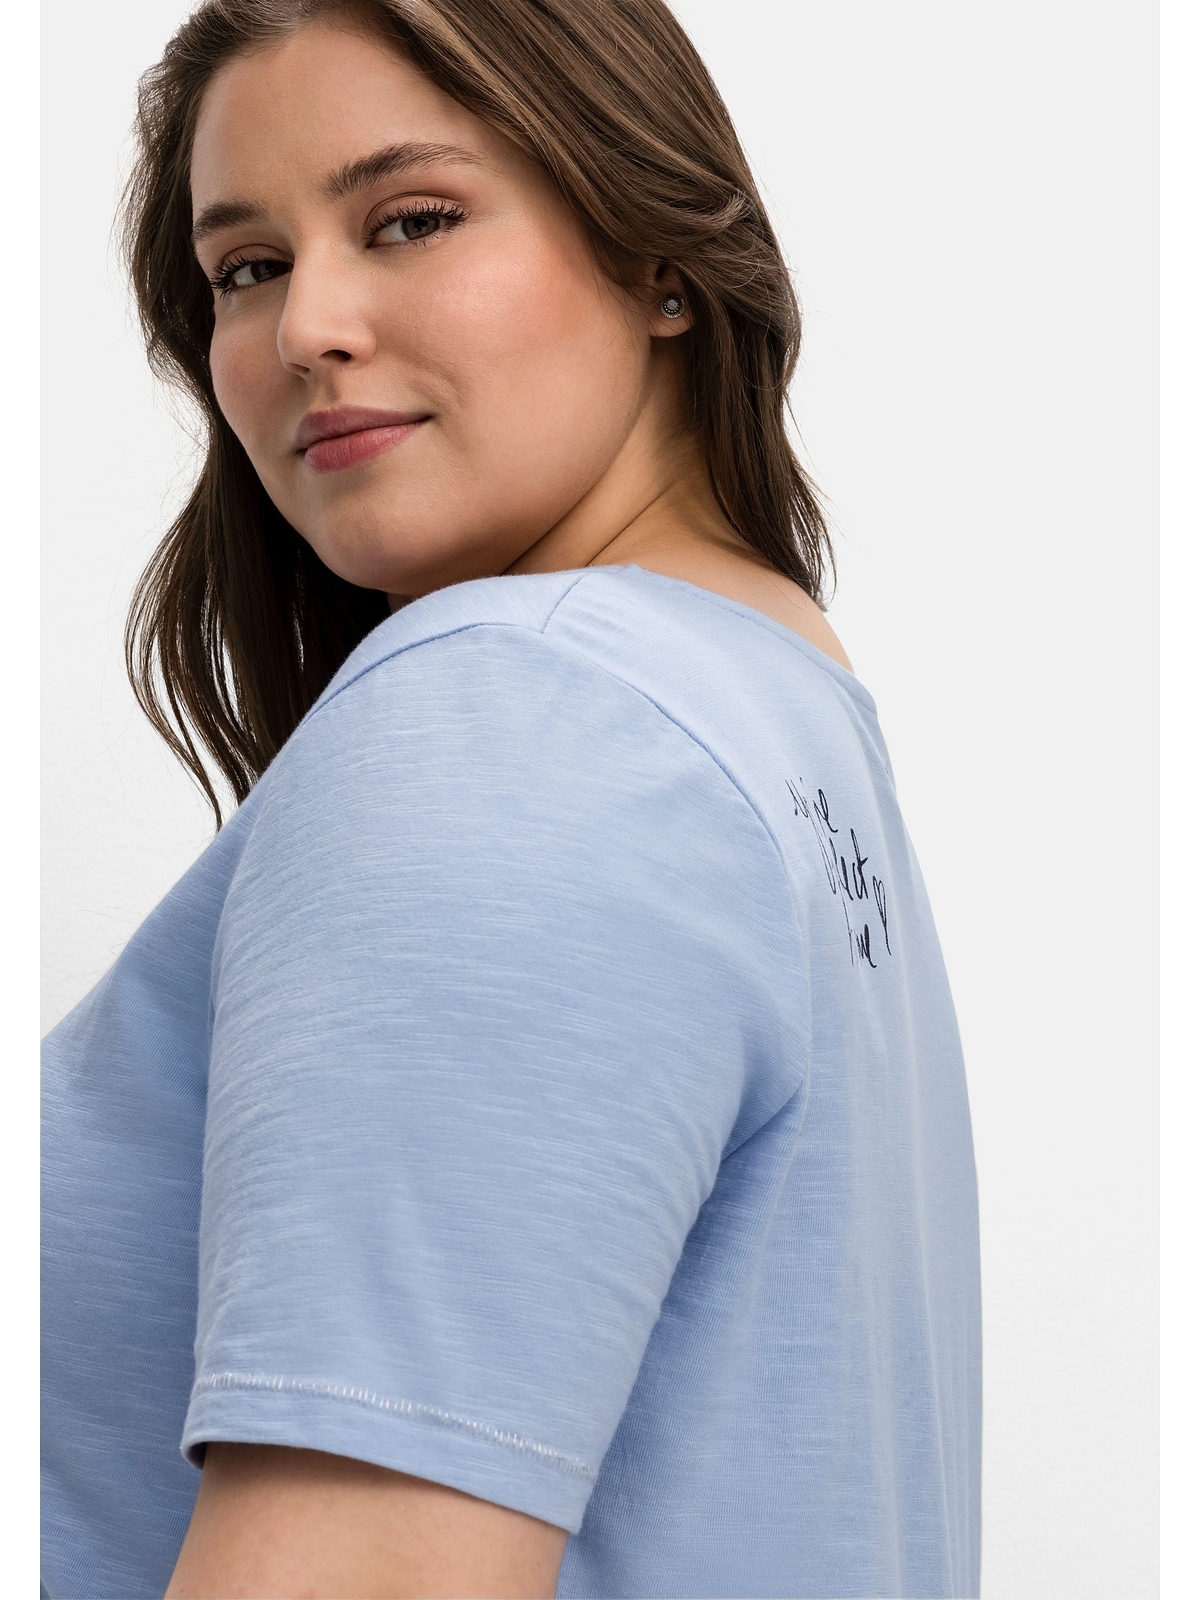 »Große kaufen auf Schulter hinten T-Shirt mit Sheego Größen«, der Print